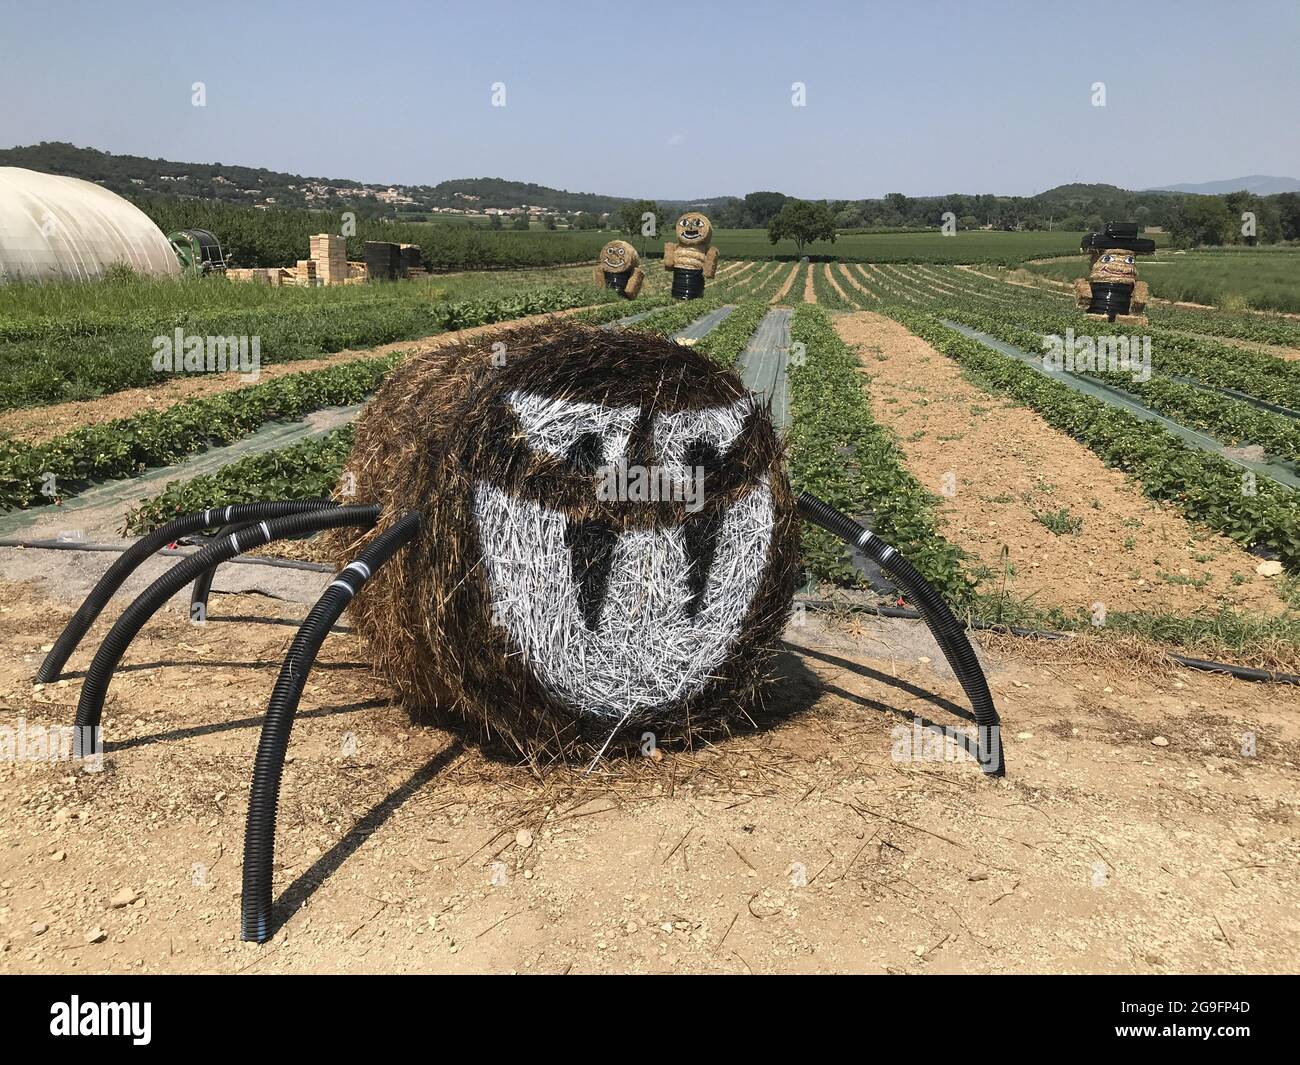 Opere d'arte insolite di un contadino con balle di fieno a Maruejols-les-Gardon, Francia, il 22 luglio 2021. Foto di Patrick Aventurier/ABACAPRESS.COM Foto Stock